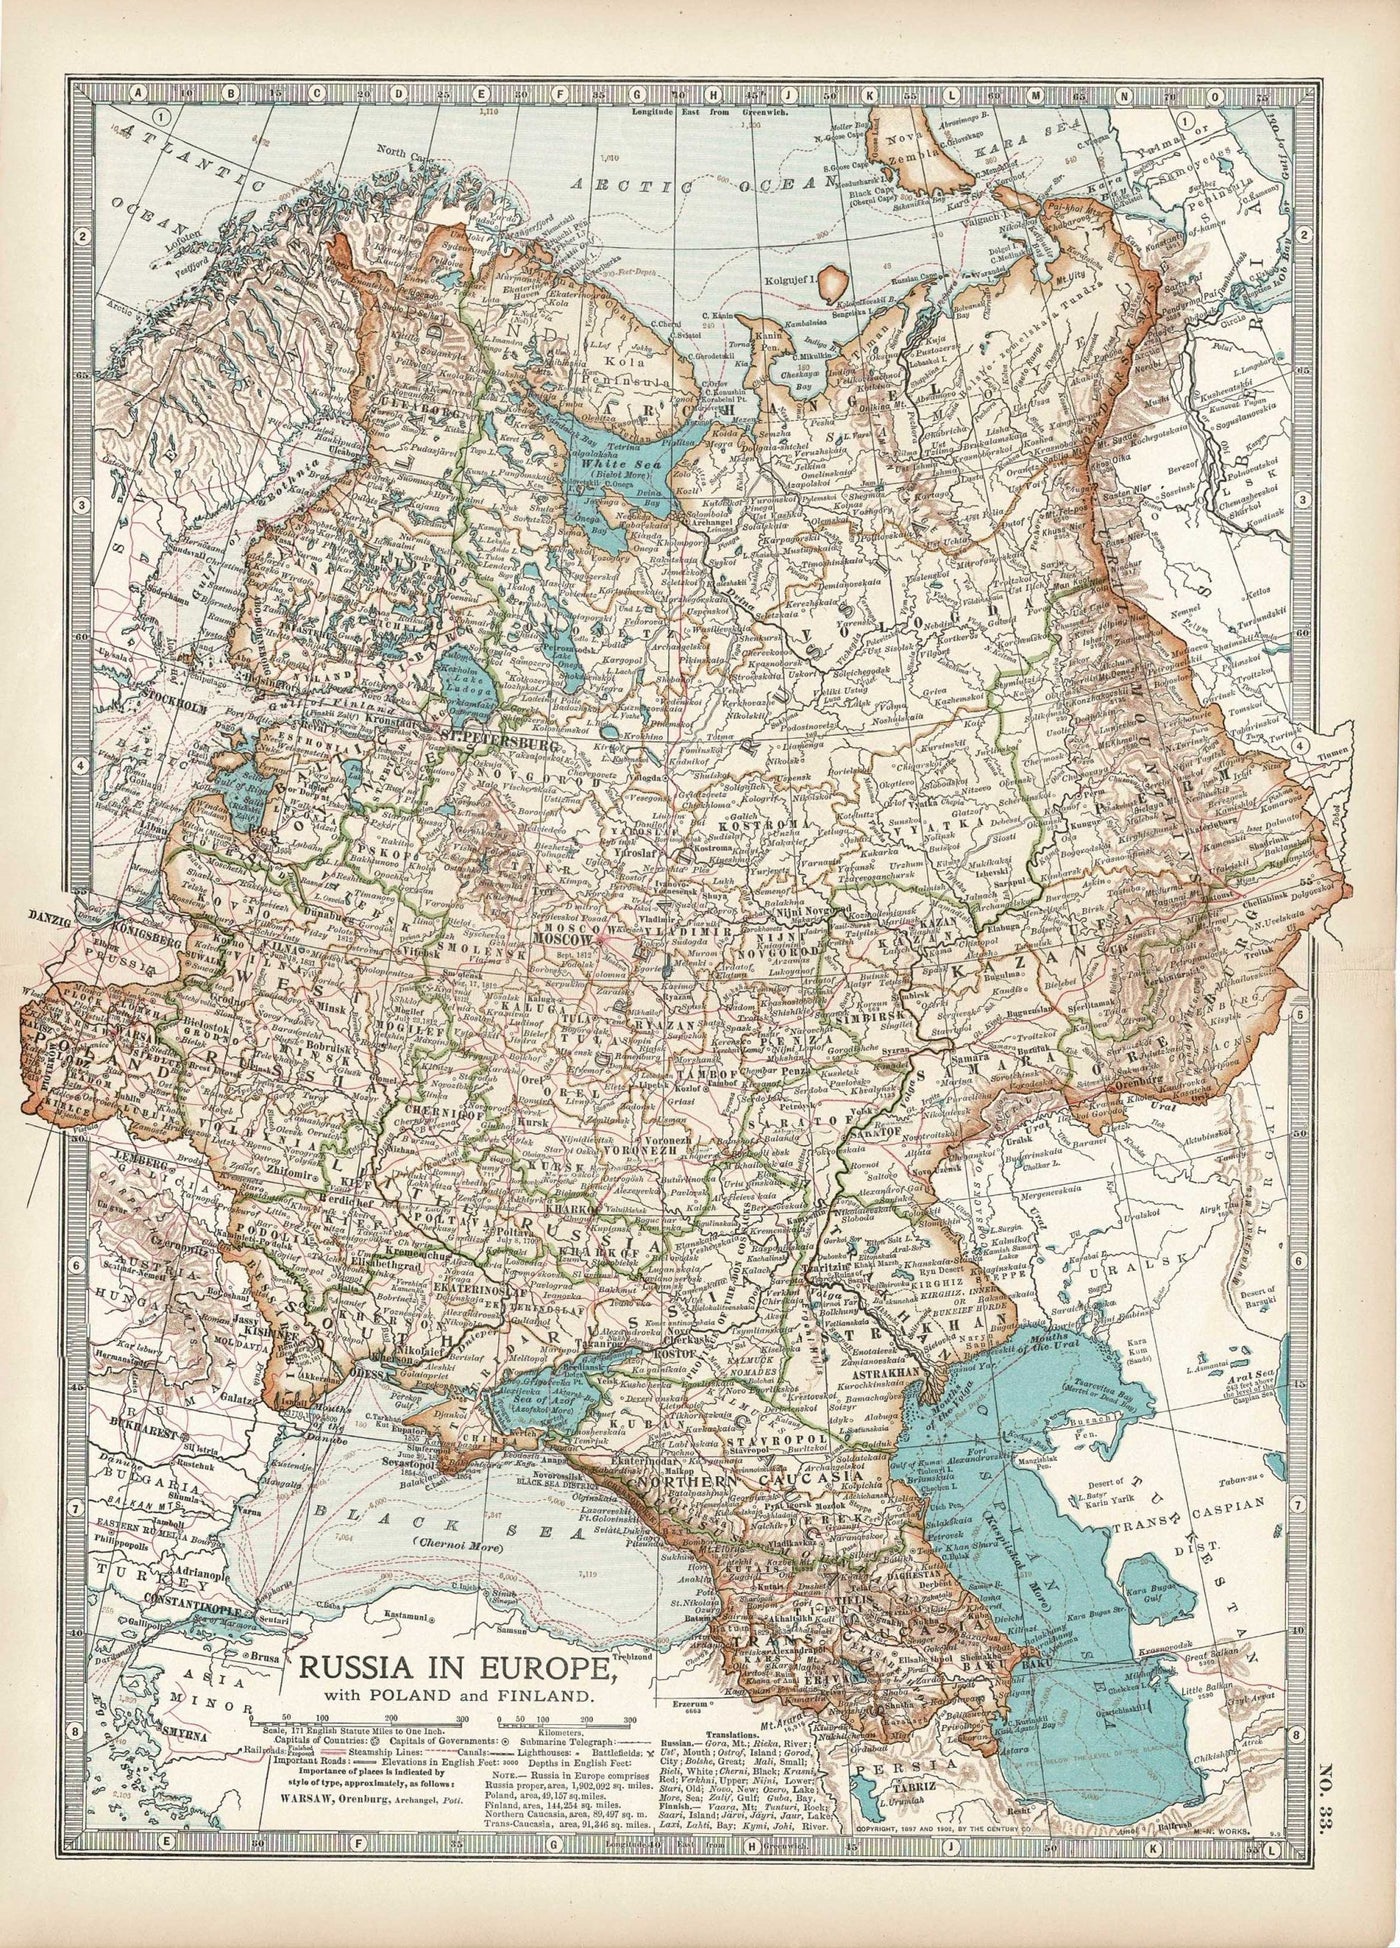 Russia in Europe antique map Encyclopaedia Britannica 1903